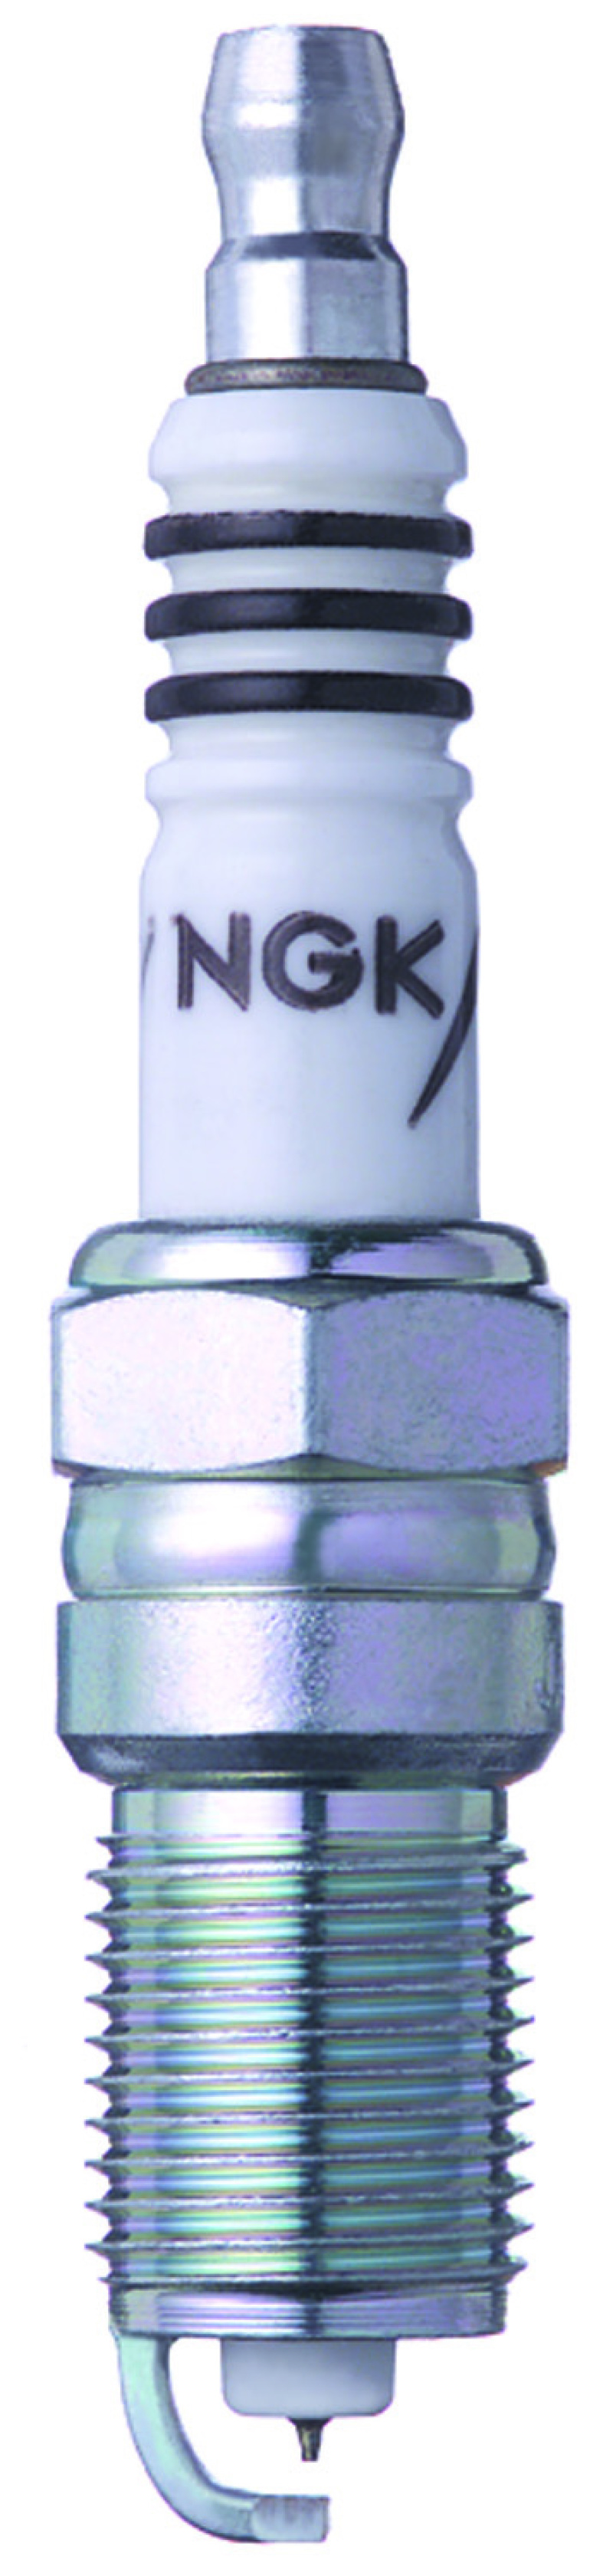 NGK IX Iridium Spark Plug Box of 4 (TR7IX) - 3690